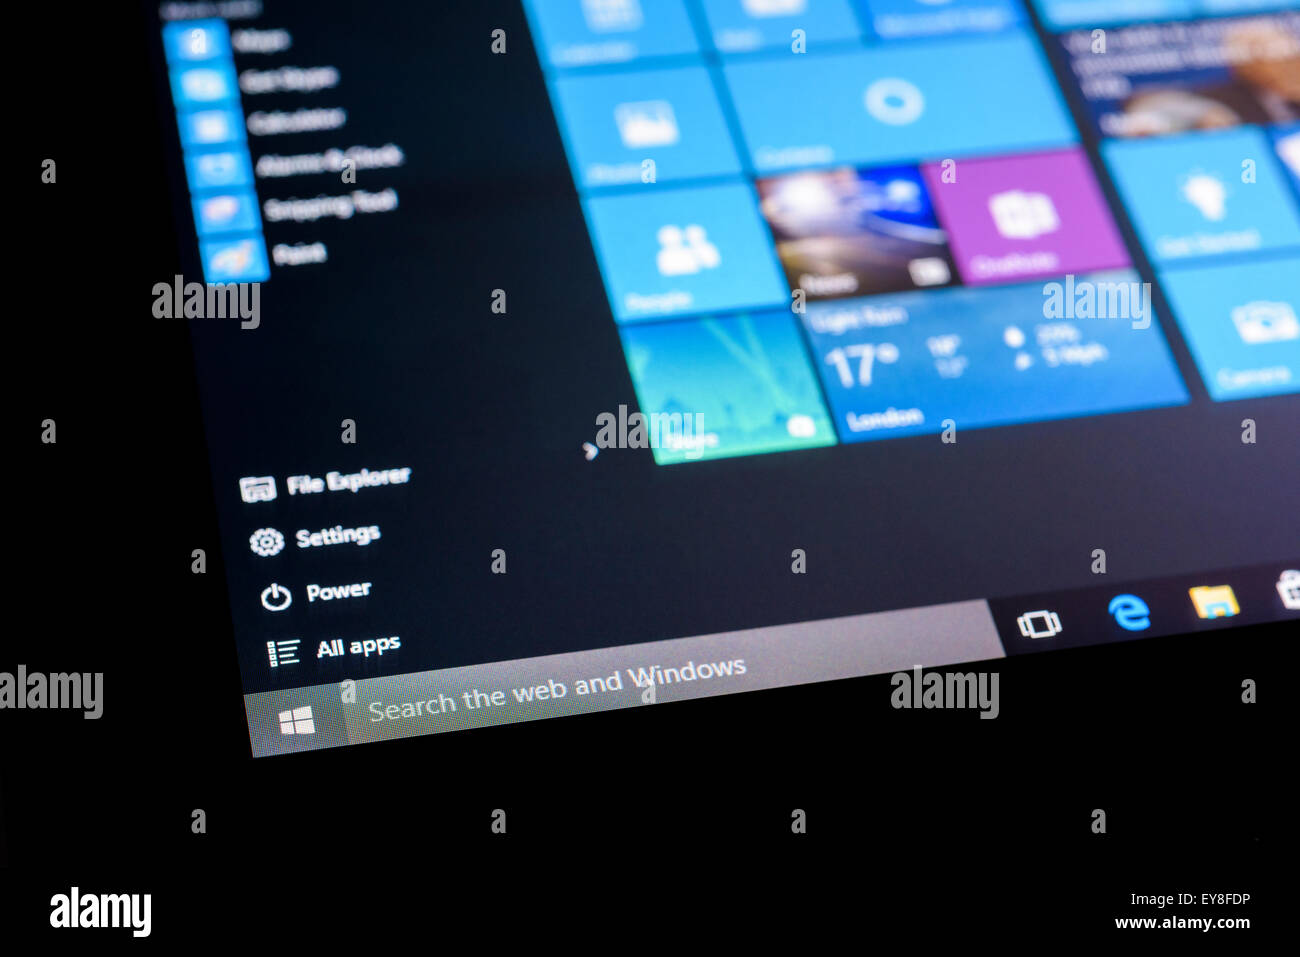 Le menu Démarrer de Microsoft Windows 10 Système d'exploitation sur un écran tactile Tablet en mode tablette. Banque D'Images